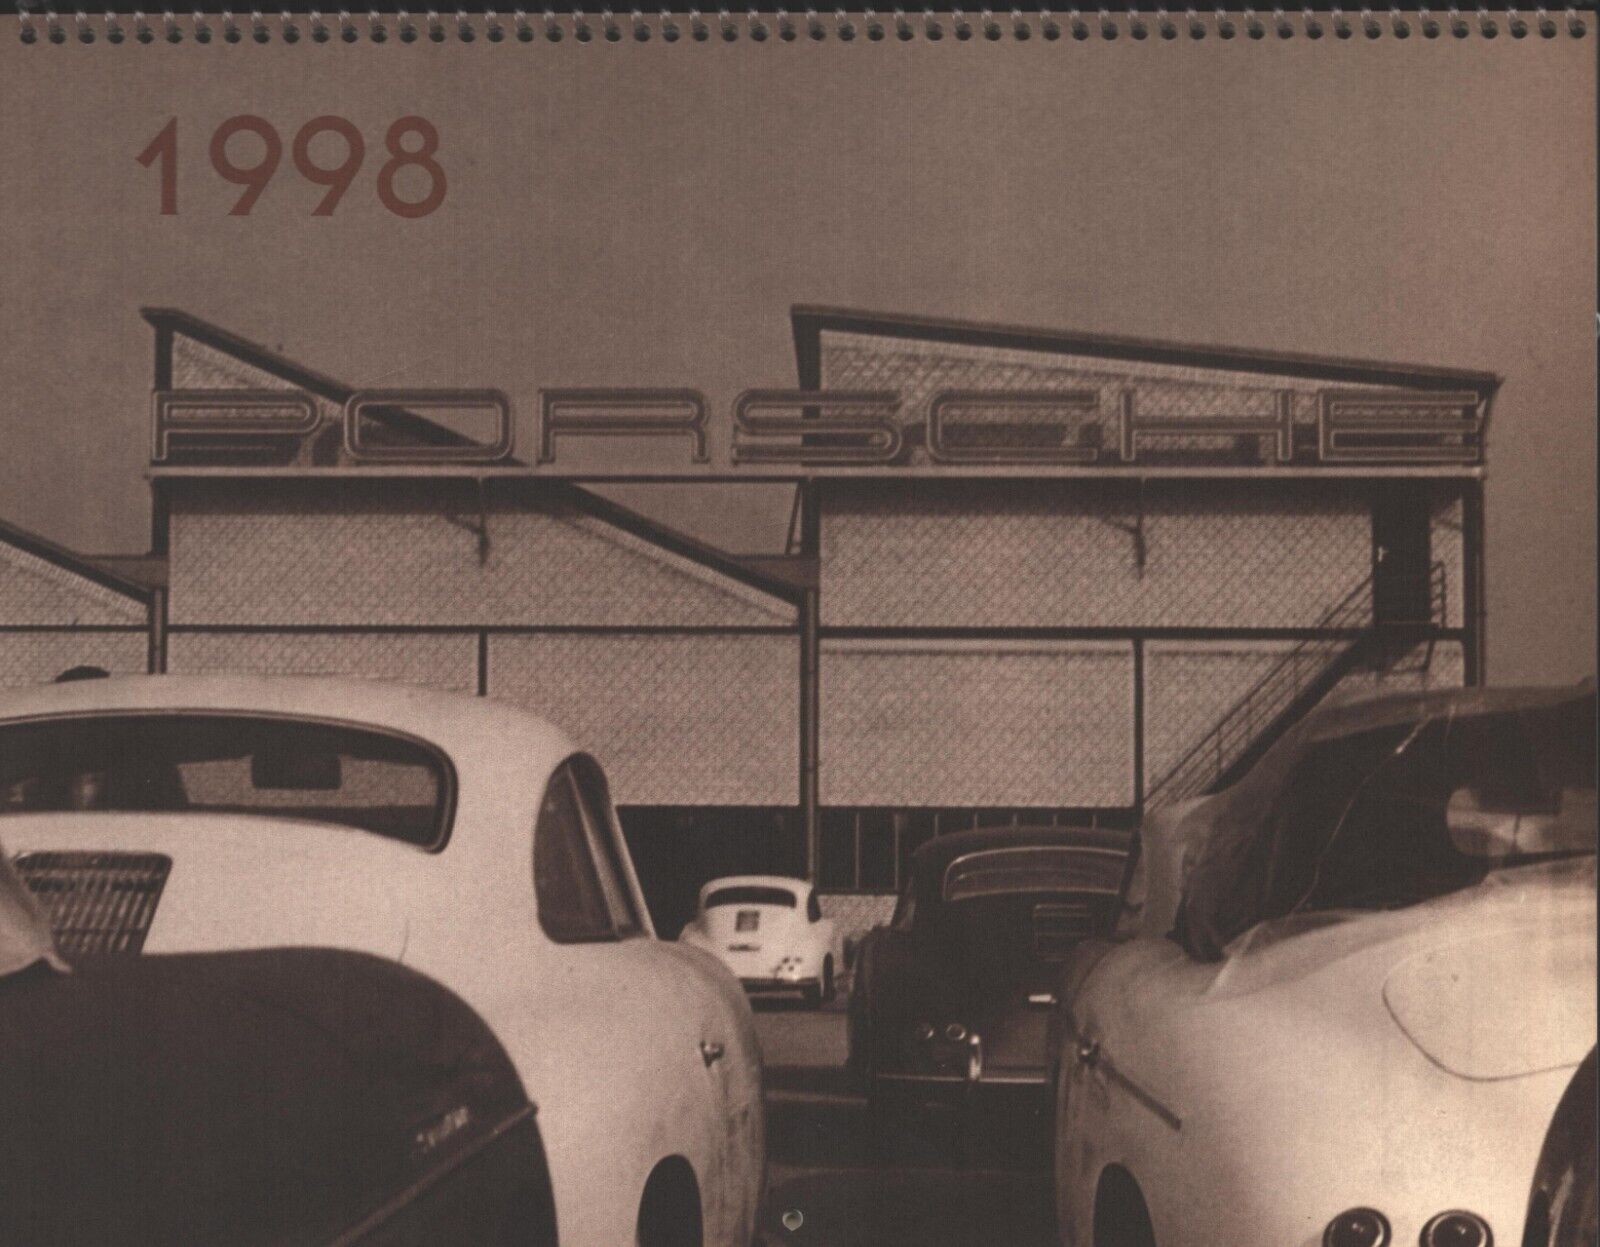 Porsche - 1998 Calendar - Porsche - Three Fifty Six, Inc.